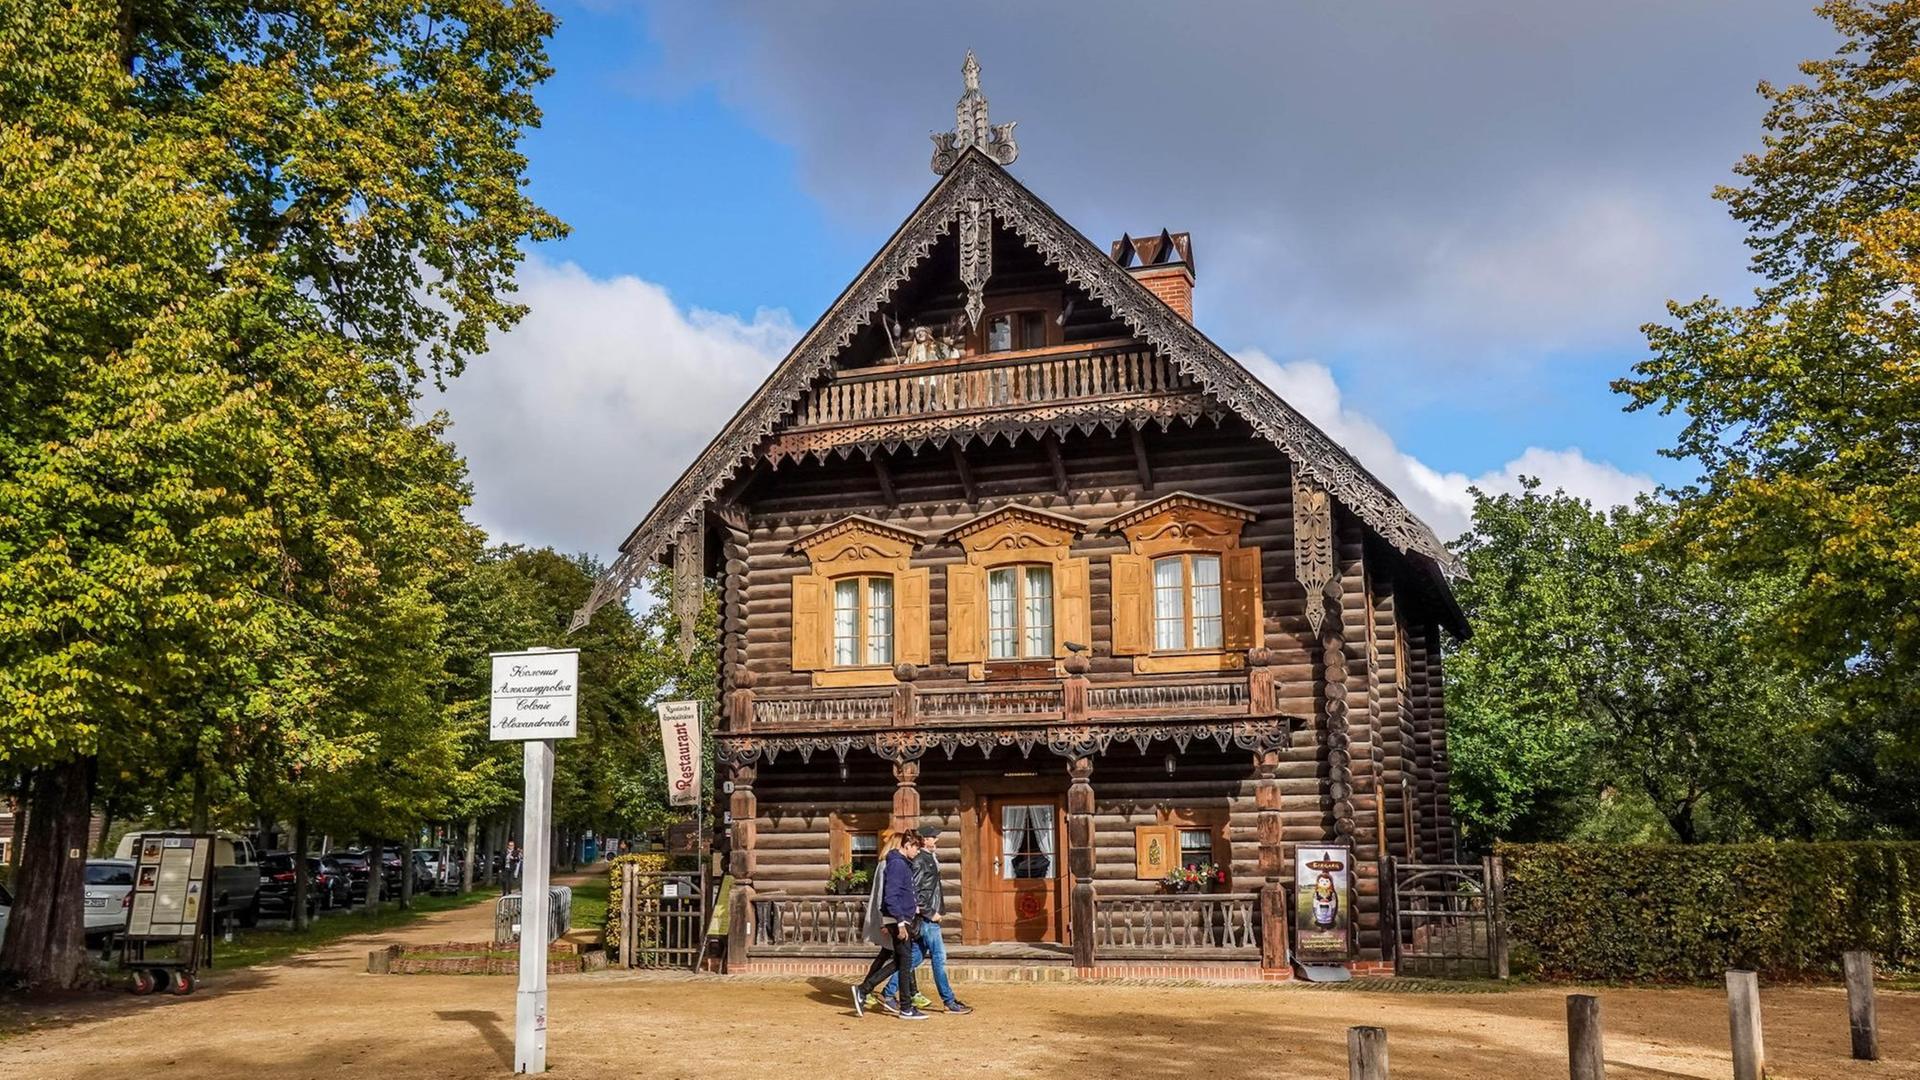 Ein Holzhaus in der Russischen Kolonie Alexandrowka in Potsdam. Davor sind zwei Spaziergänger.